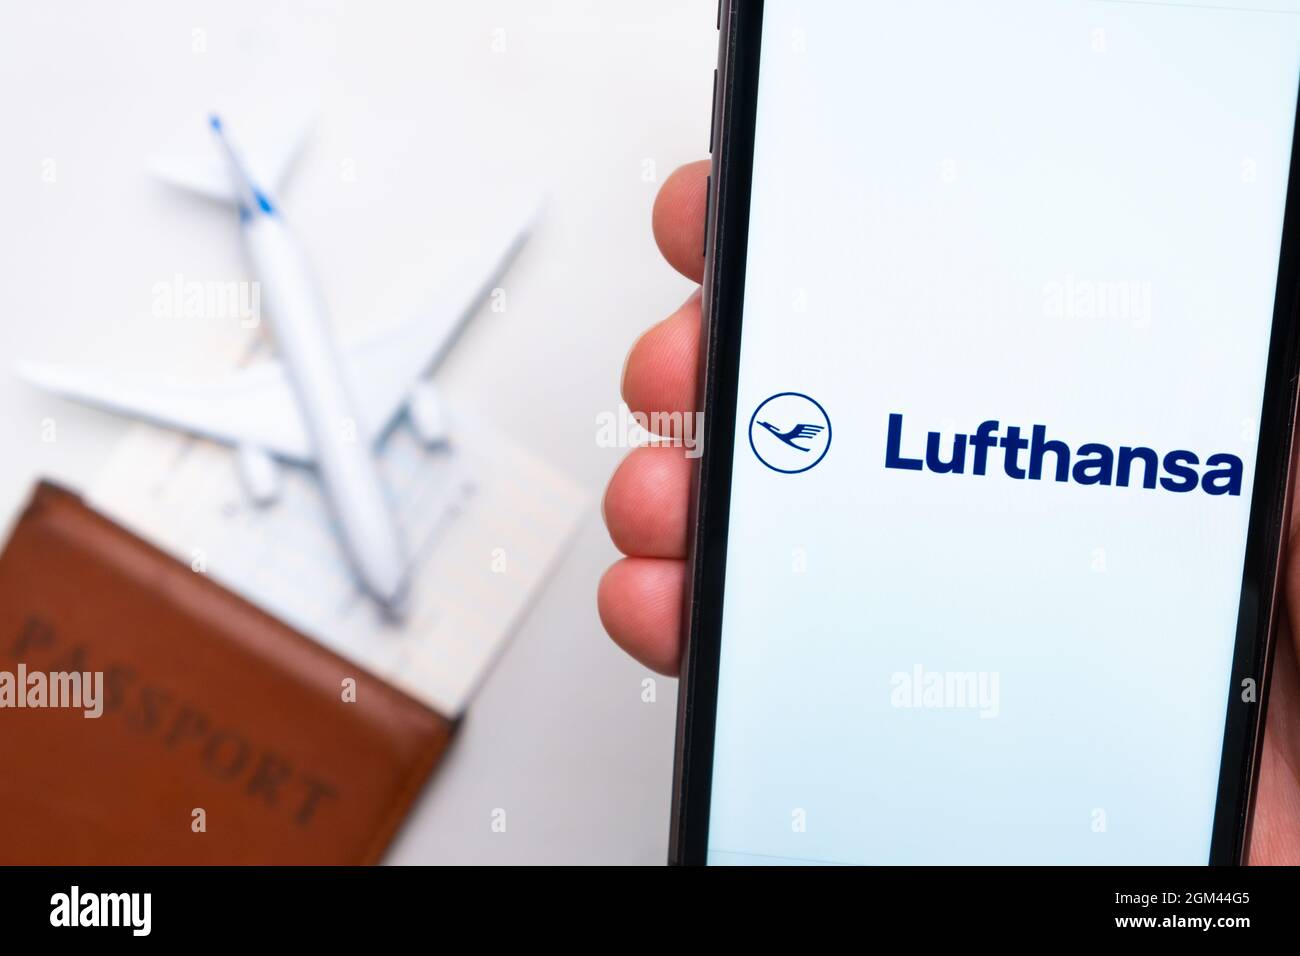 Application ou logo de la compagnie aérienne Lufthansa affiché sur un téléphone mobile avec passeport, carte d'embarquement et avion en arrière-plan, septembre 2021, San Banque D'Images